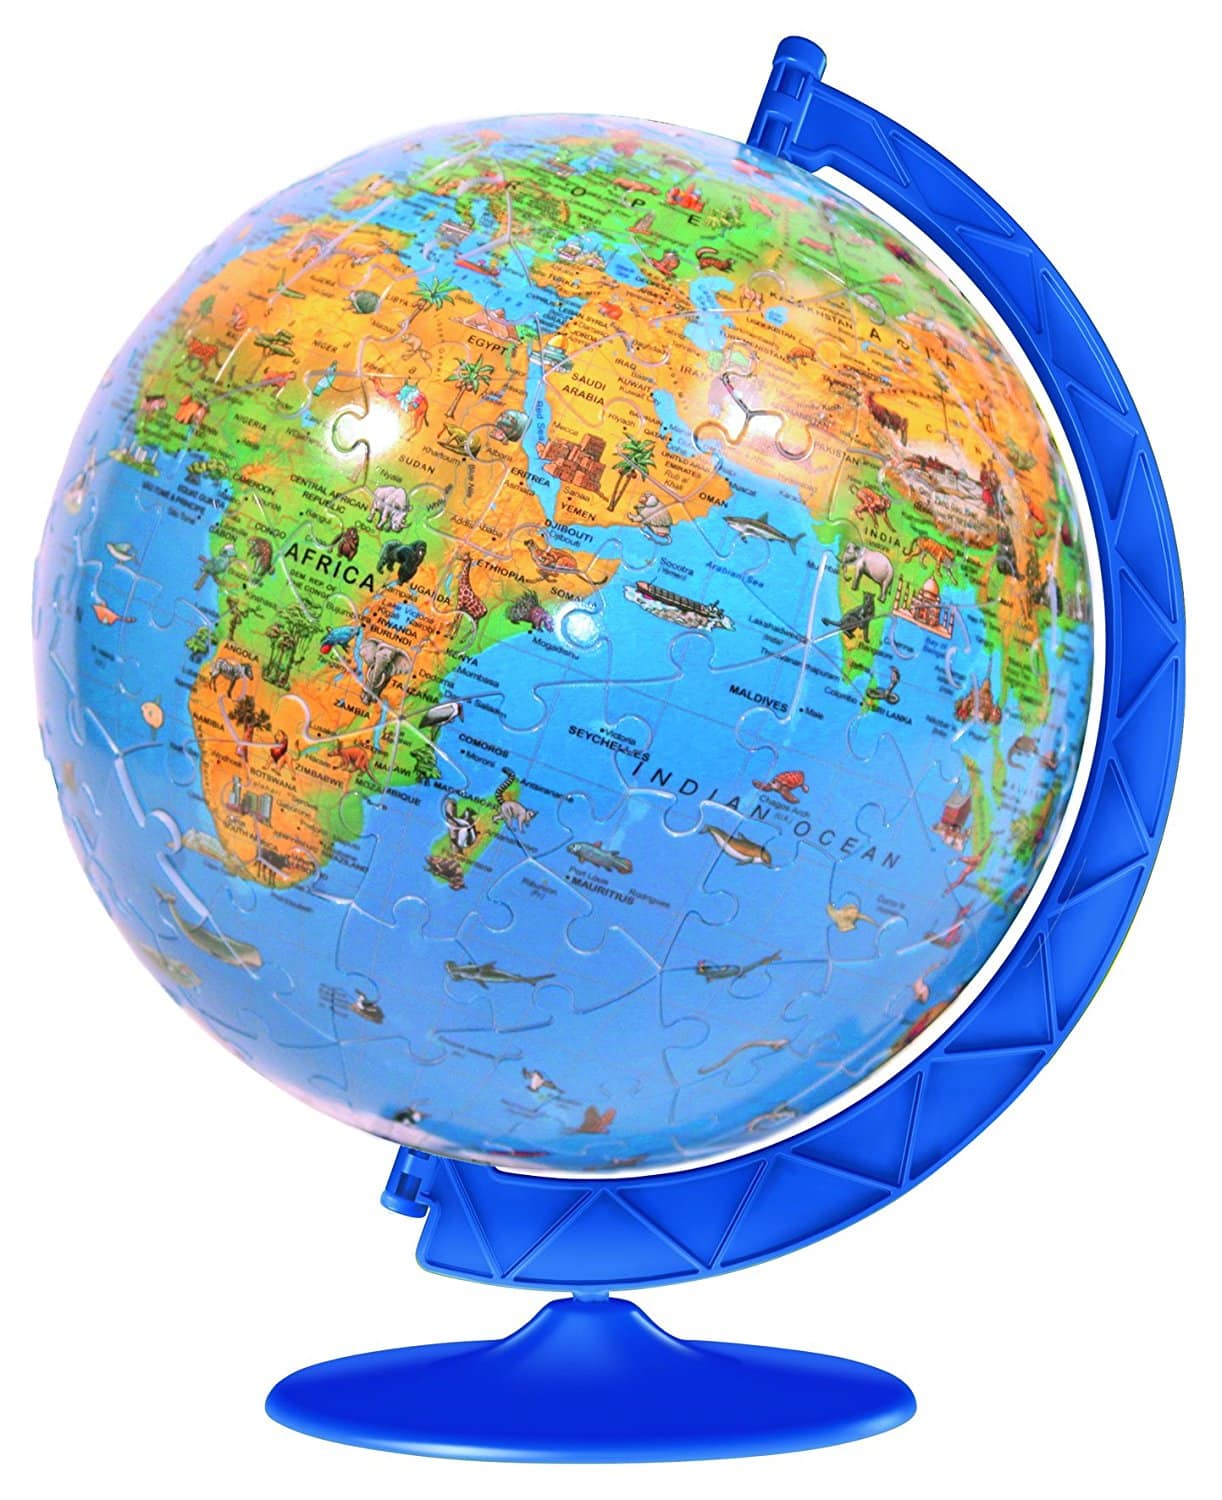 LIGHTNING DEAL ALERT! Children’s Globe 180 Piece Puzzleball – 34% off!